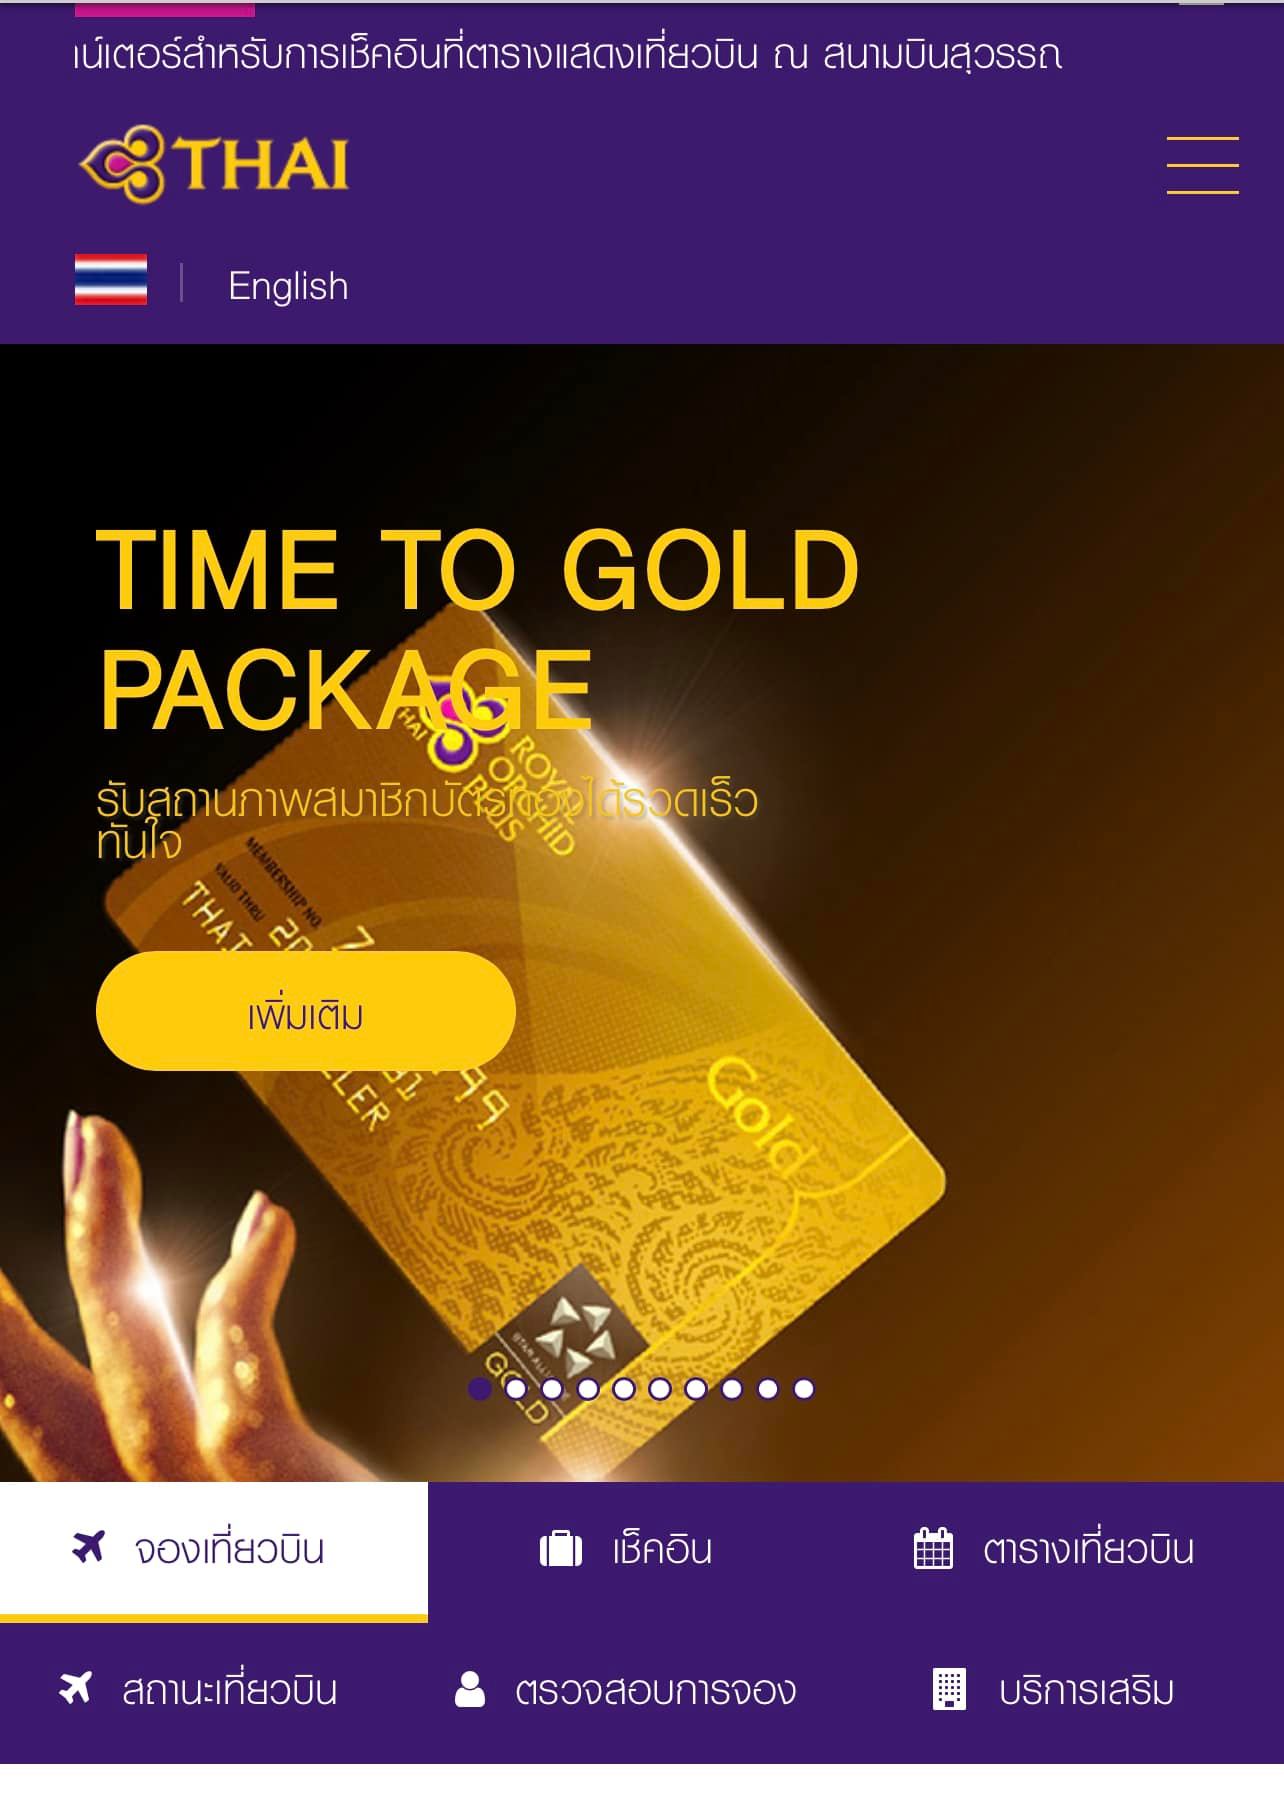 การบินไทย✈️ เปิดขาย สมาชิกบัตรทอง ( Rop Gold ) ราคา 350,000 ใช้เครดิตเงินจาก  แพ็กเกจ Time To Gold ✈️ - Pantip